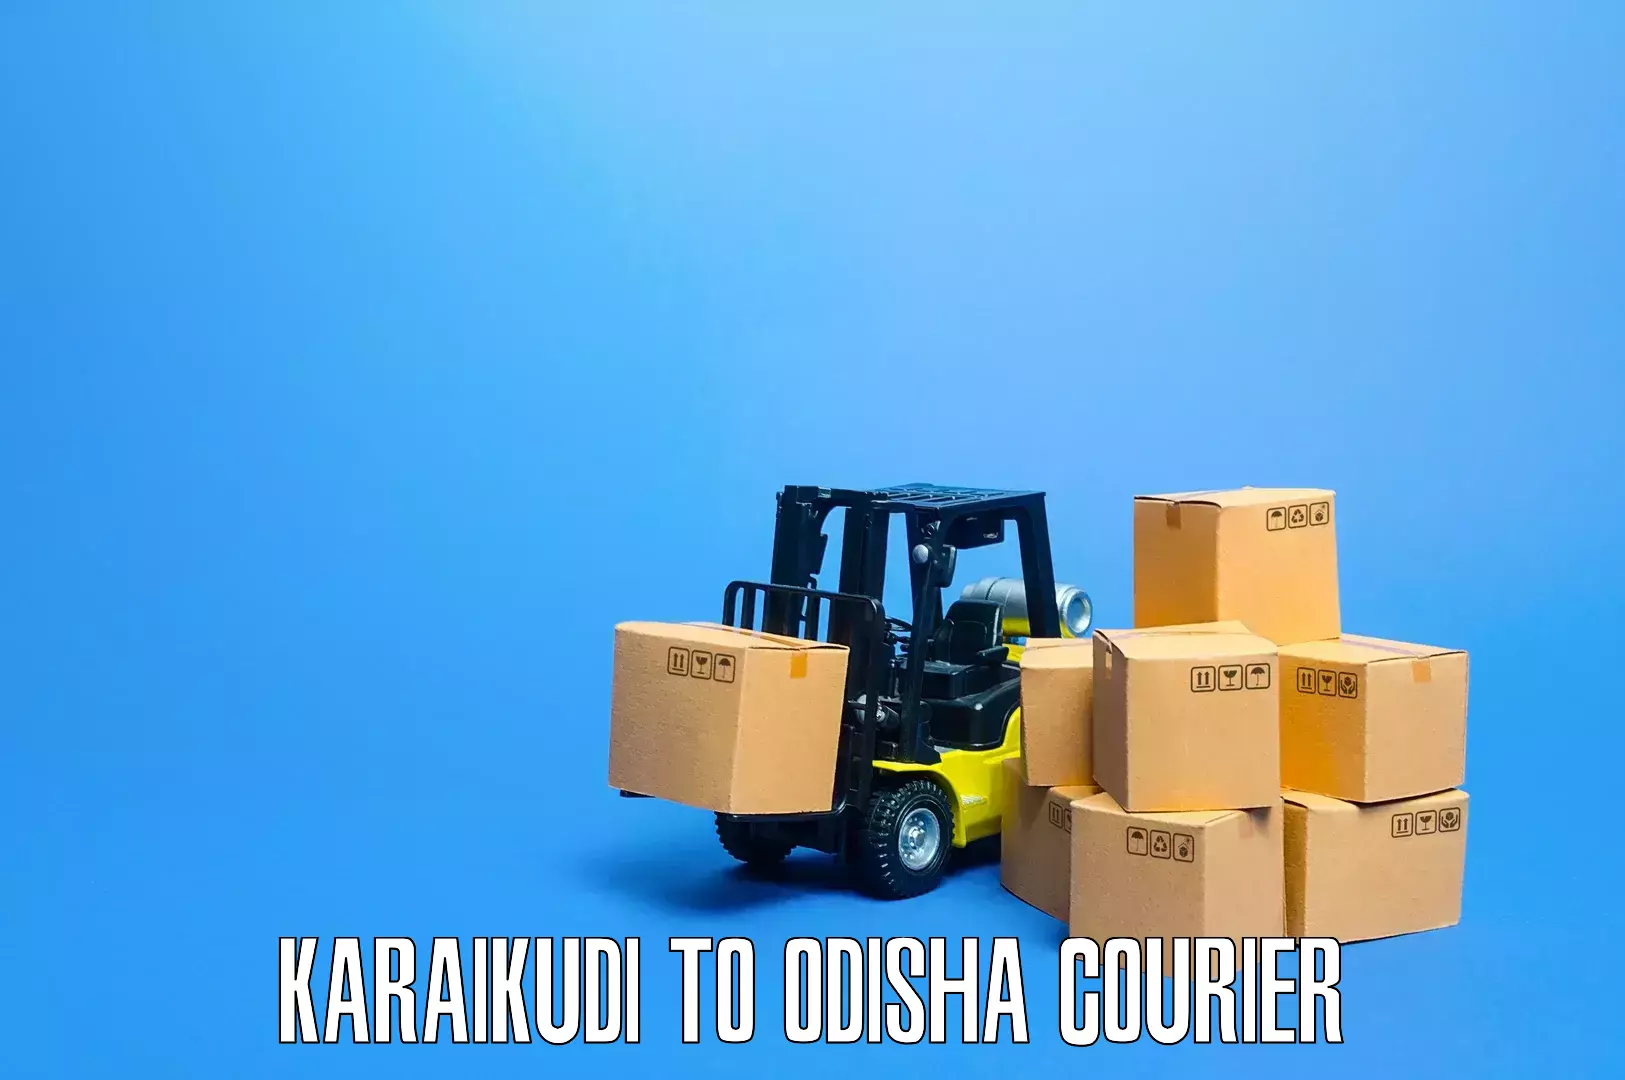 Reliable furniture transport in Karaikudi to Nayagarh